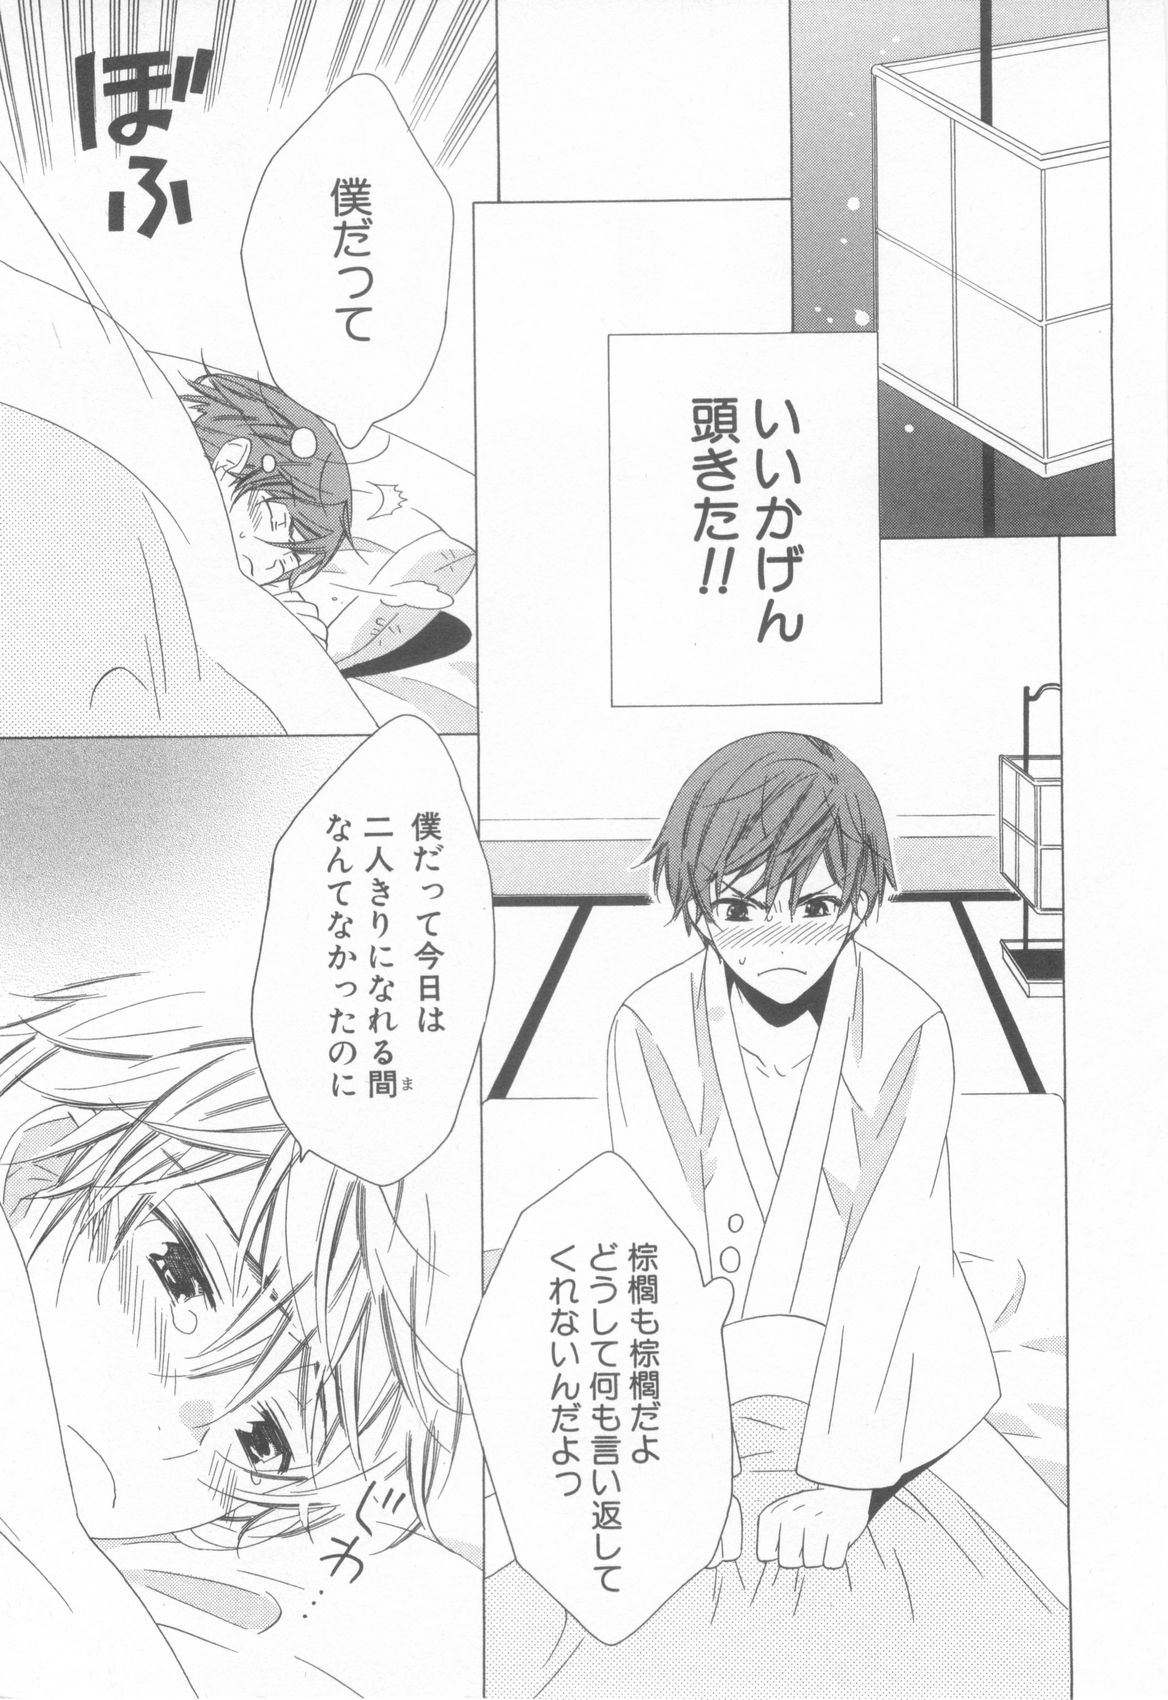 [Anthology] Shota Tama Vol. 3 page 45 full